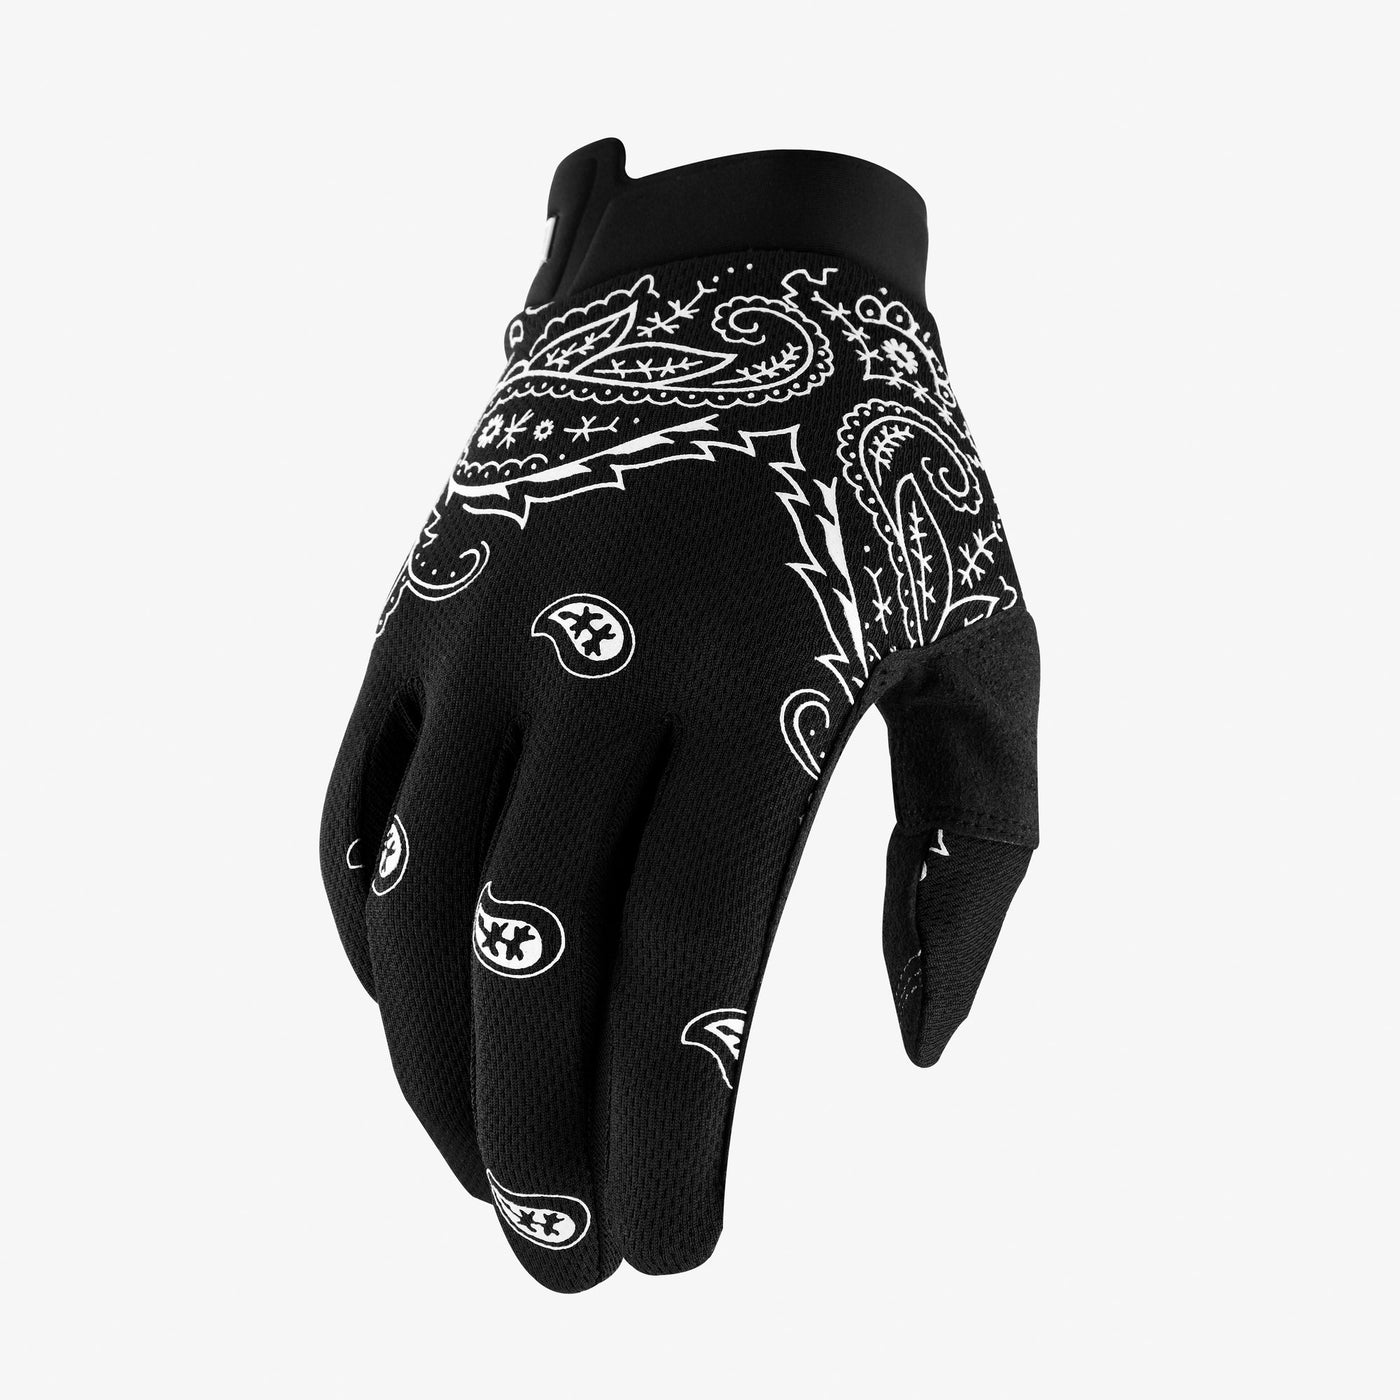 iTRACK Gloves Bandana